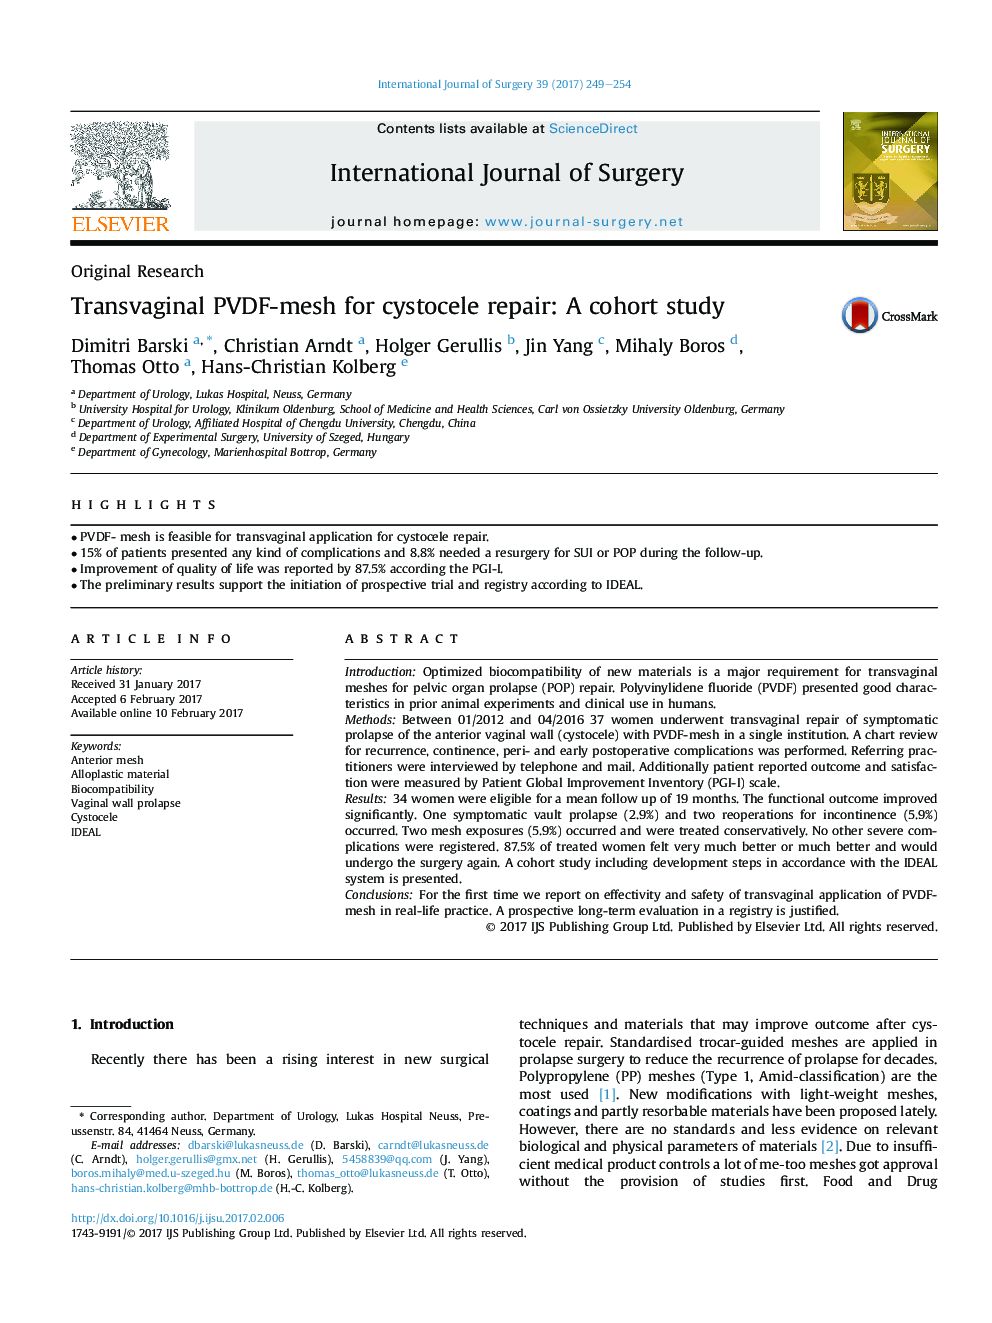 Original ResearchTransvaginal PVDF-mesh for cystocele repair: A cohort study